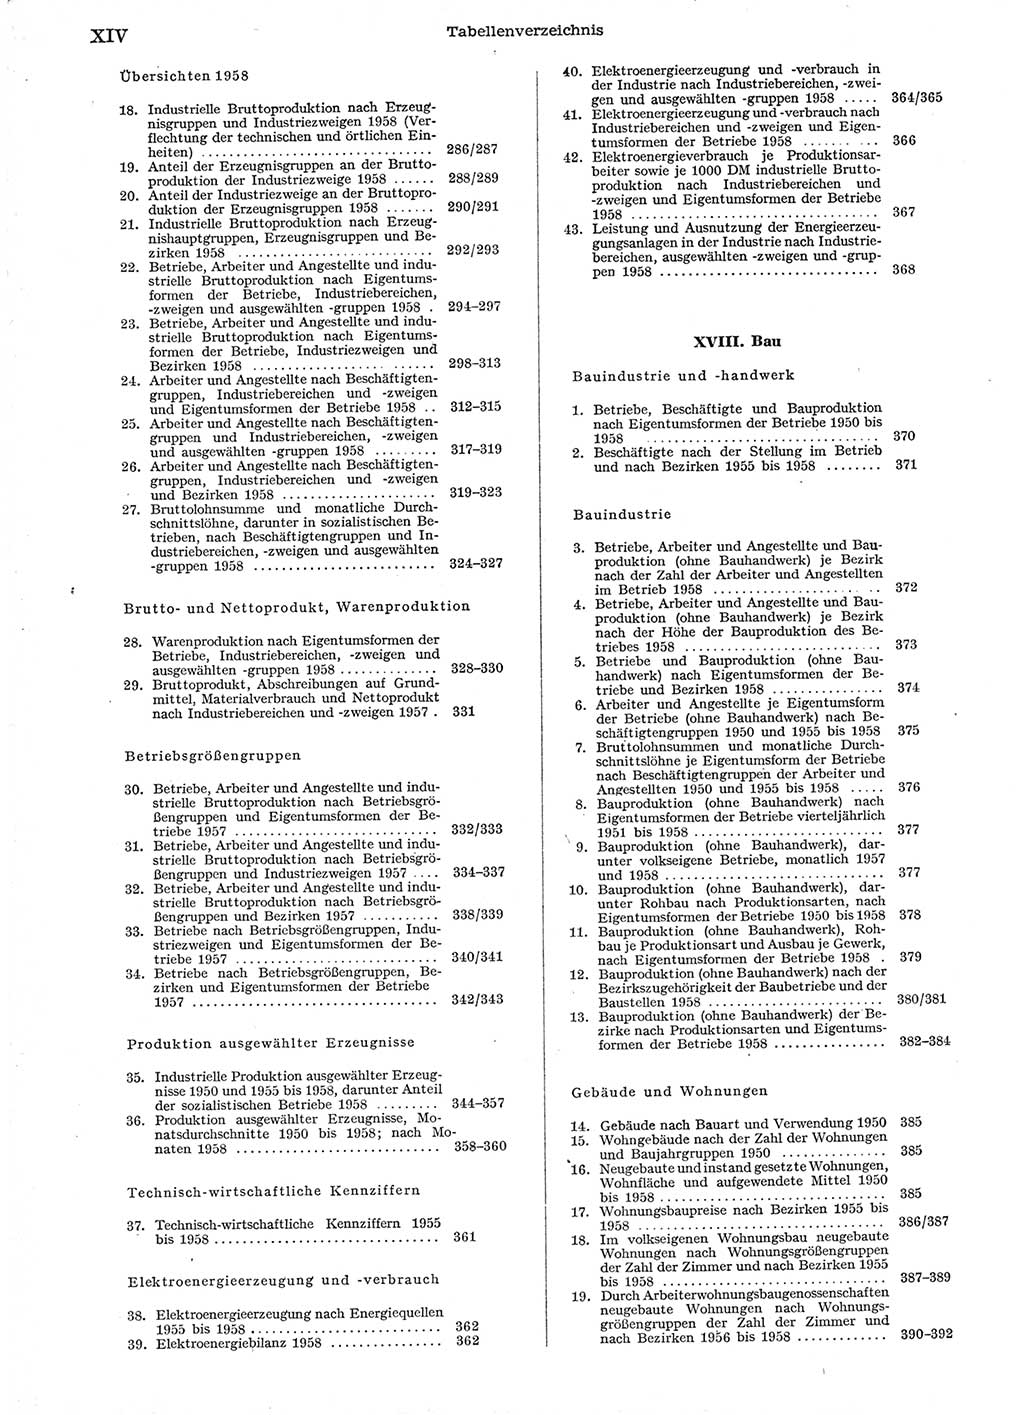 Statistisches Jahrbuch der Deutschen Demokratischen Republik (DDR) 1958, Seite 14 (Stat. Jb. DDR 1958, S. 14)